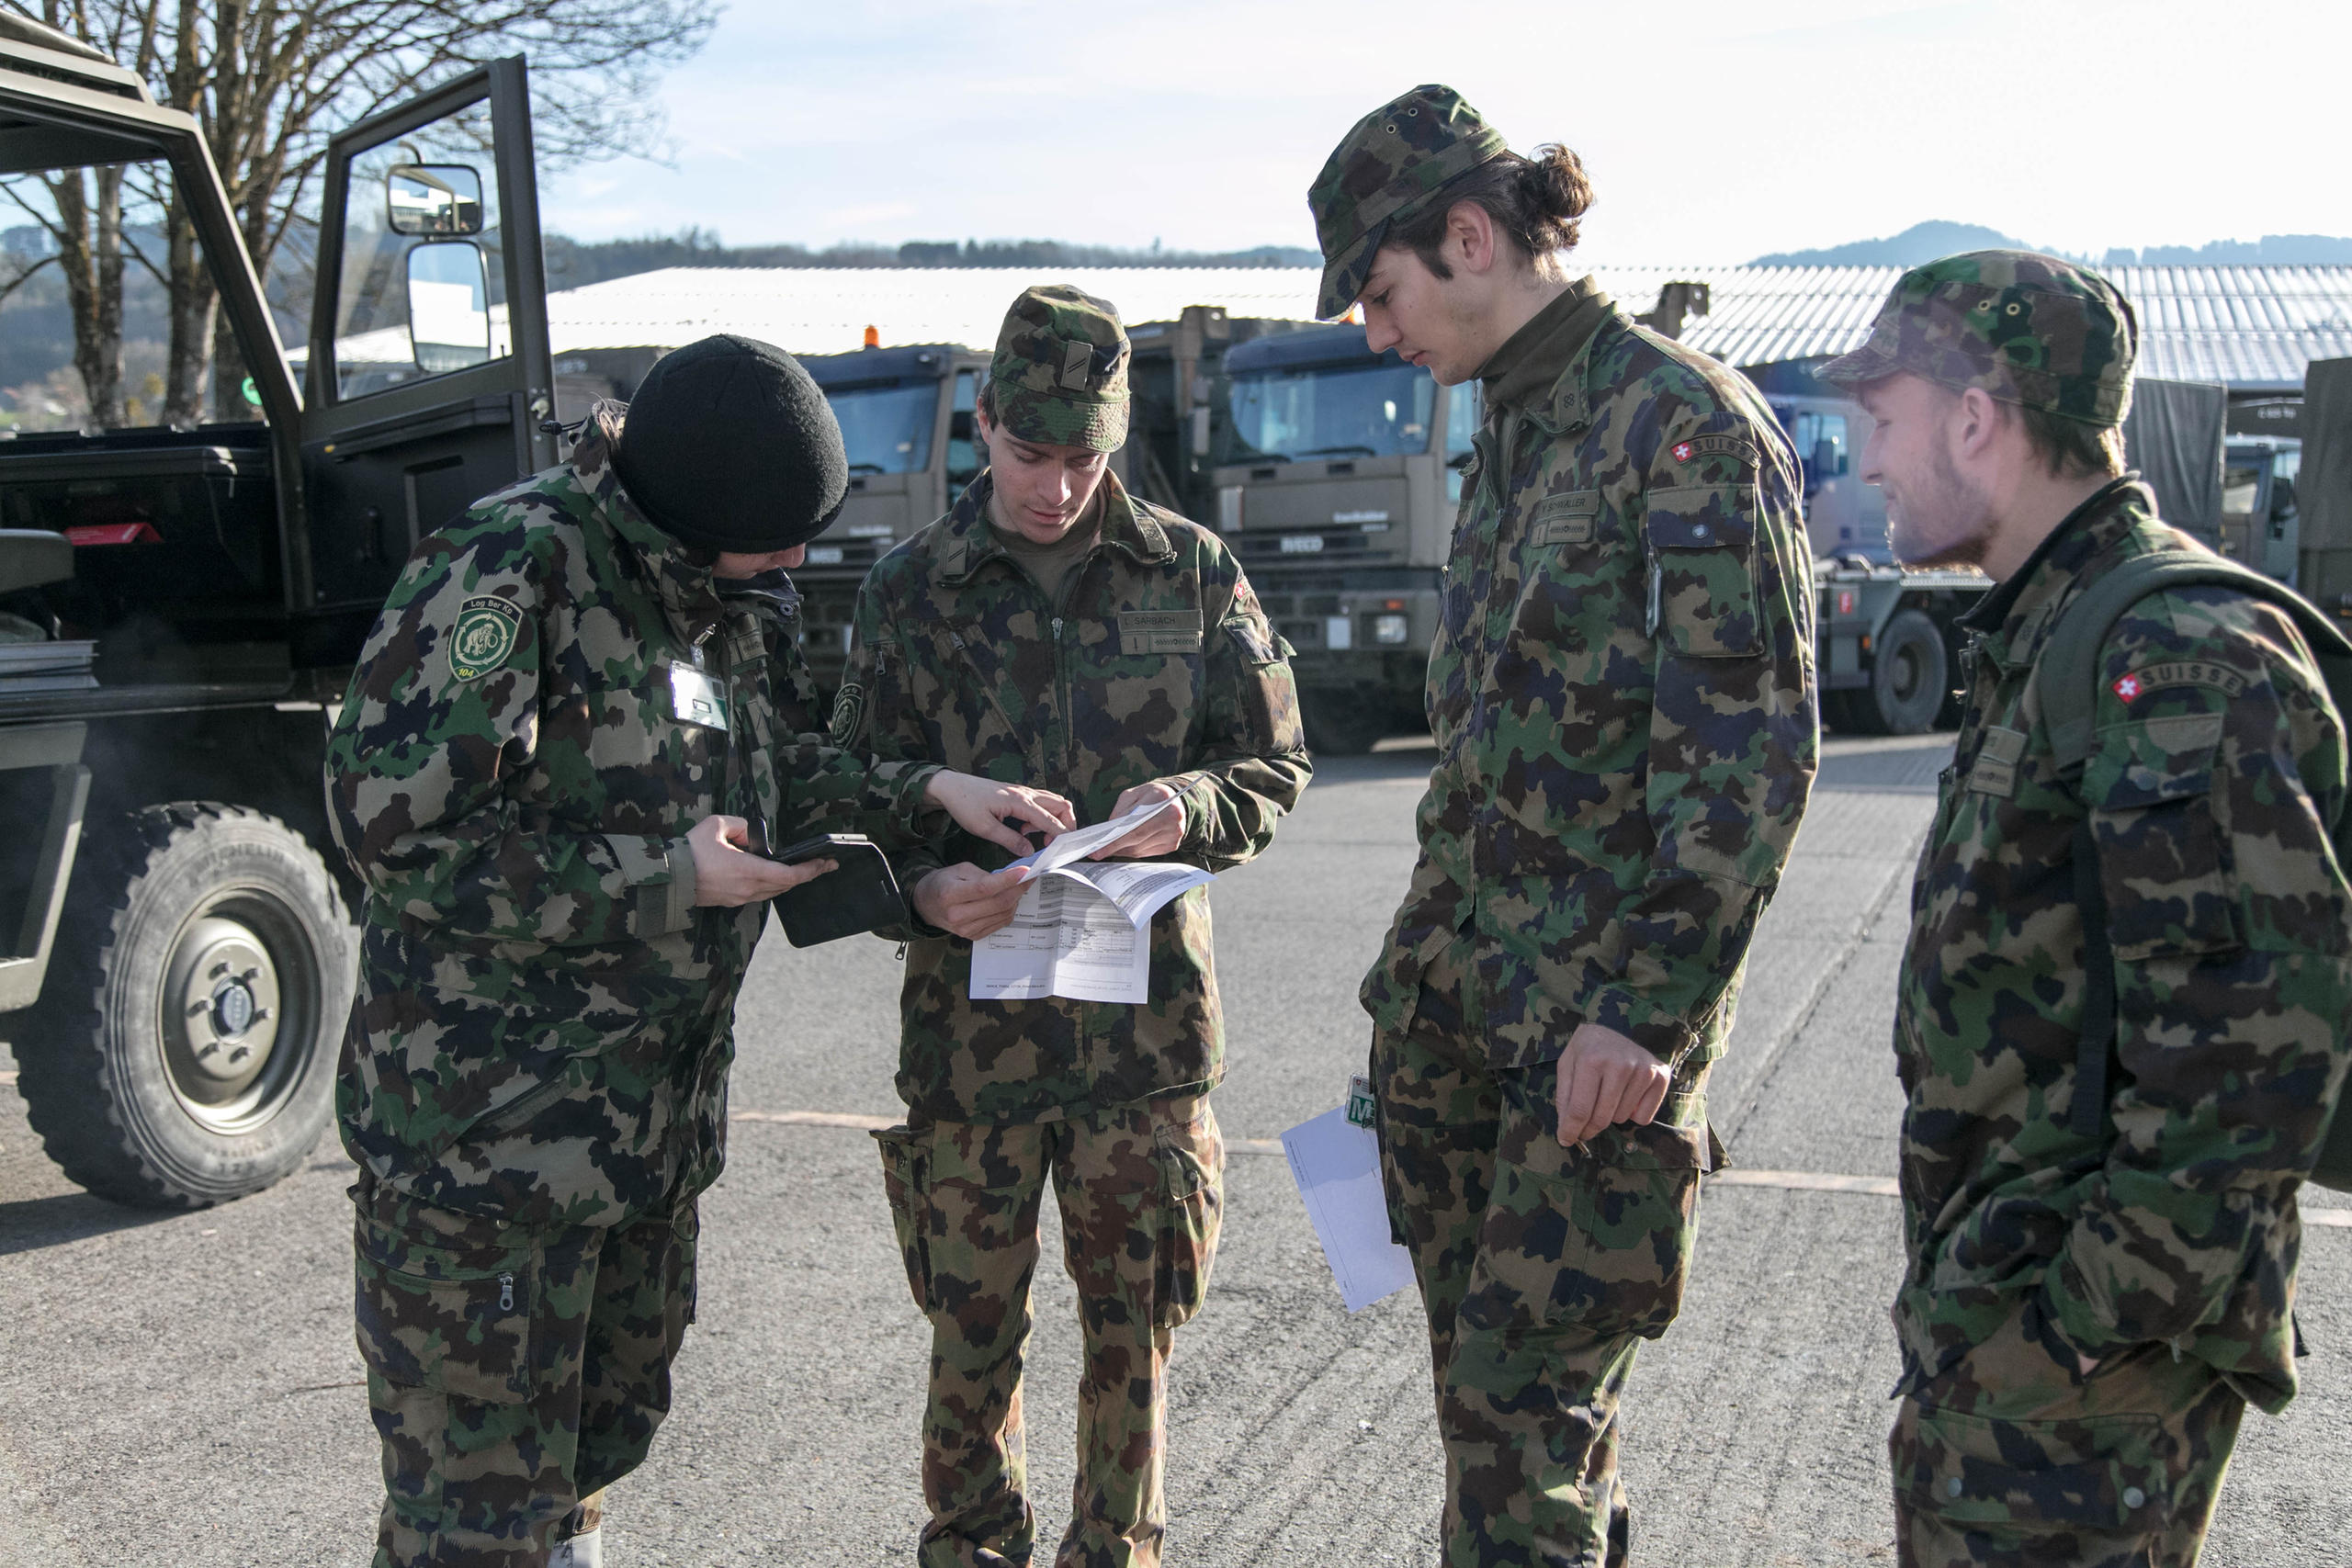 четверо солдат обсуждают что-то написанное на бумаге